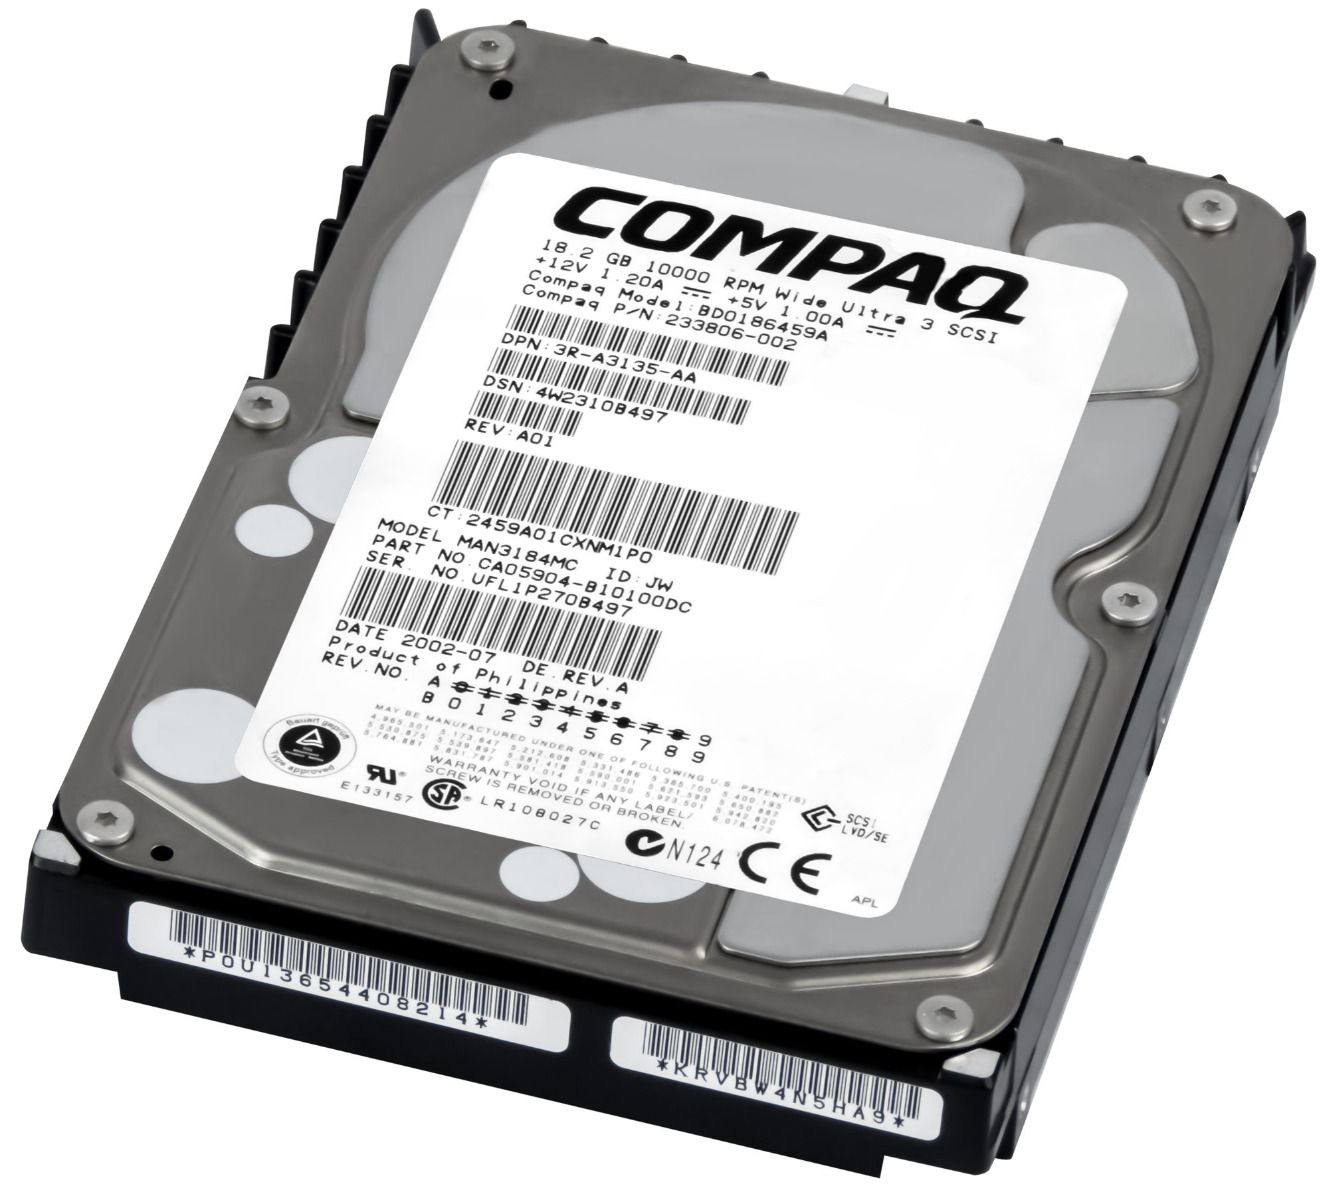 COMPAQ 233806-002 18GB 10K 8MB SCSI U160 3.5'' BD0186459A